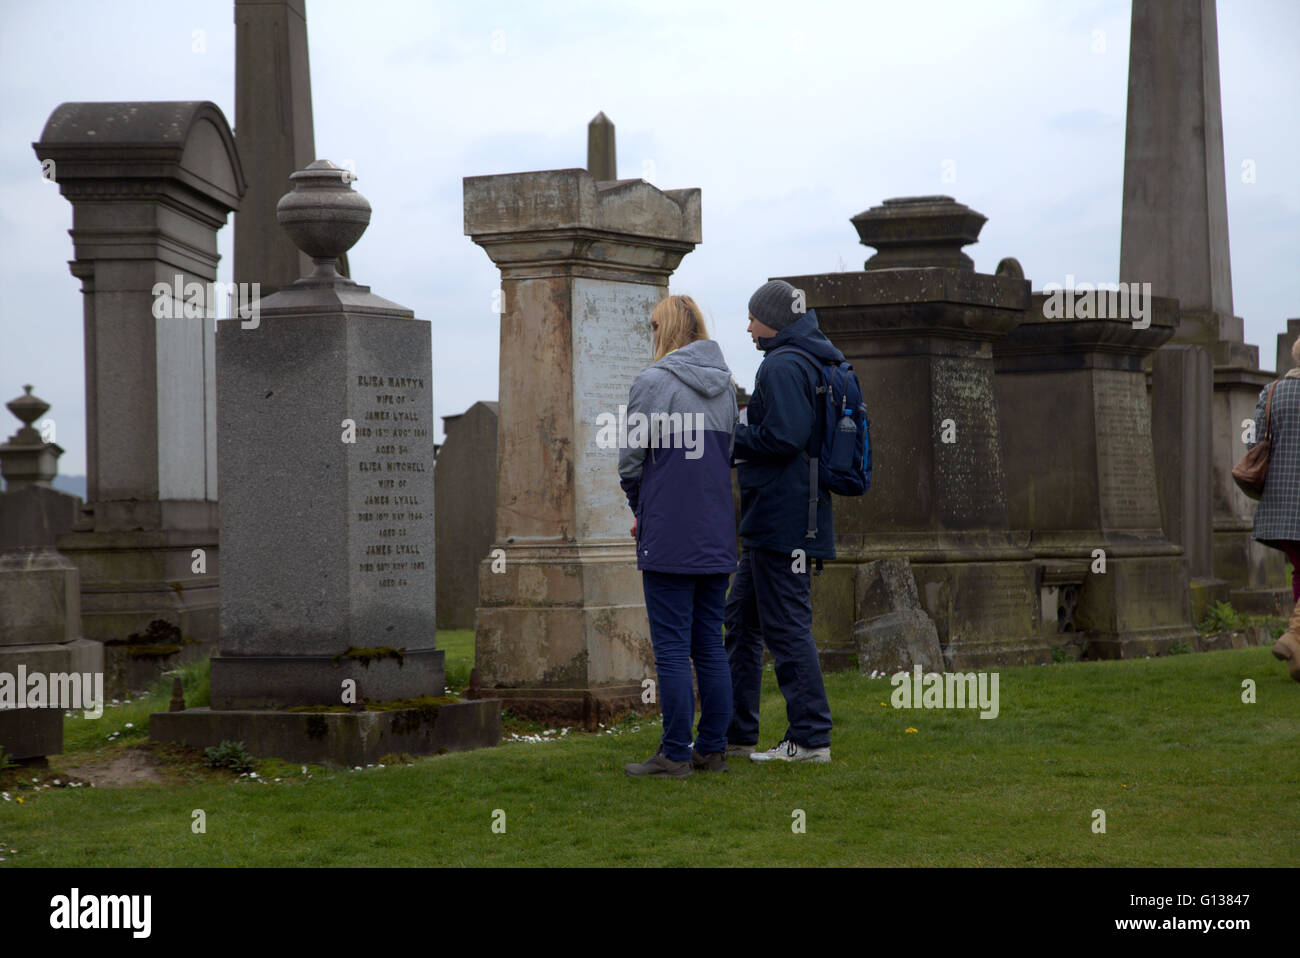 Jeune homme et femme se distingue respectivement en face de pierre dans la nécropole de Glasgow, Ecosse, Royaume-Uni Banque D'Images